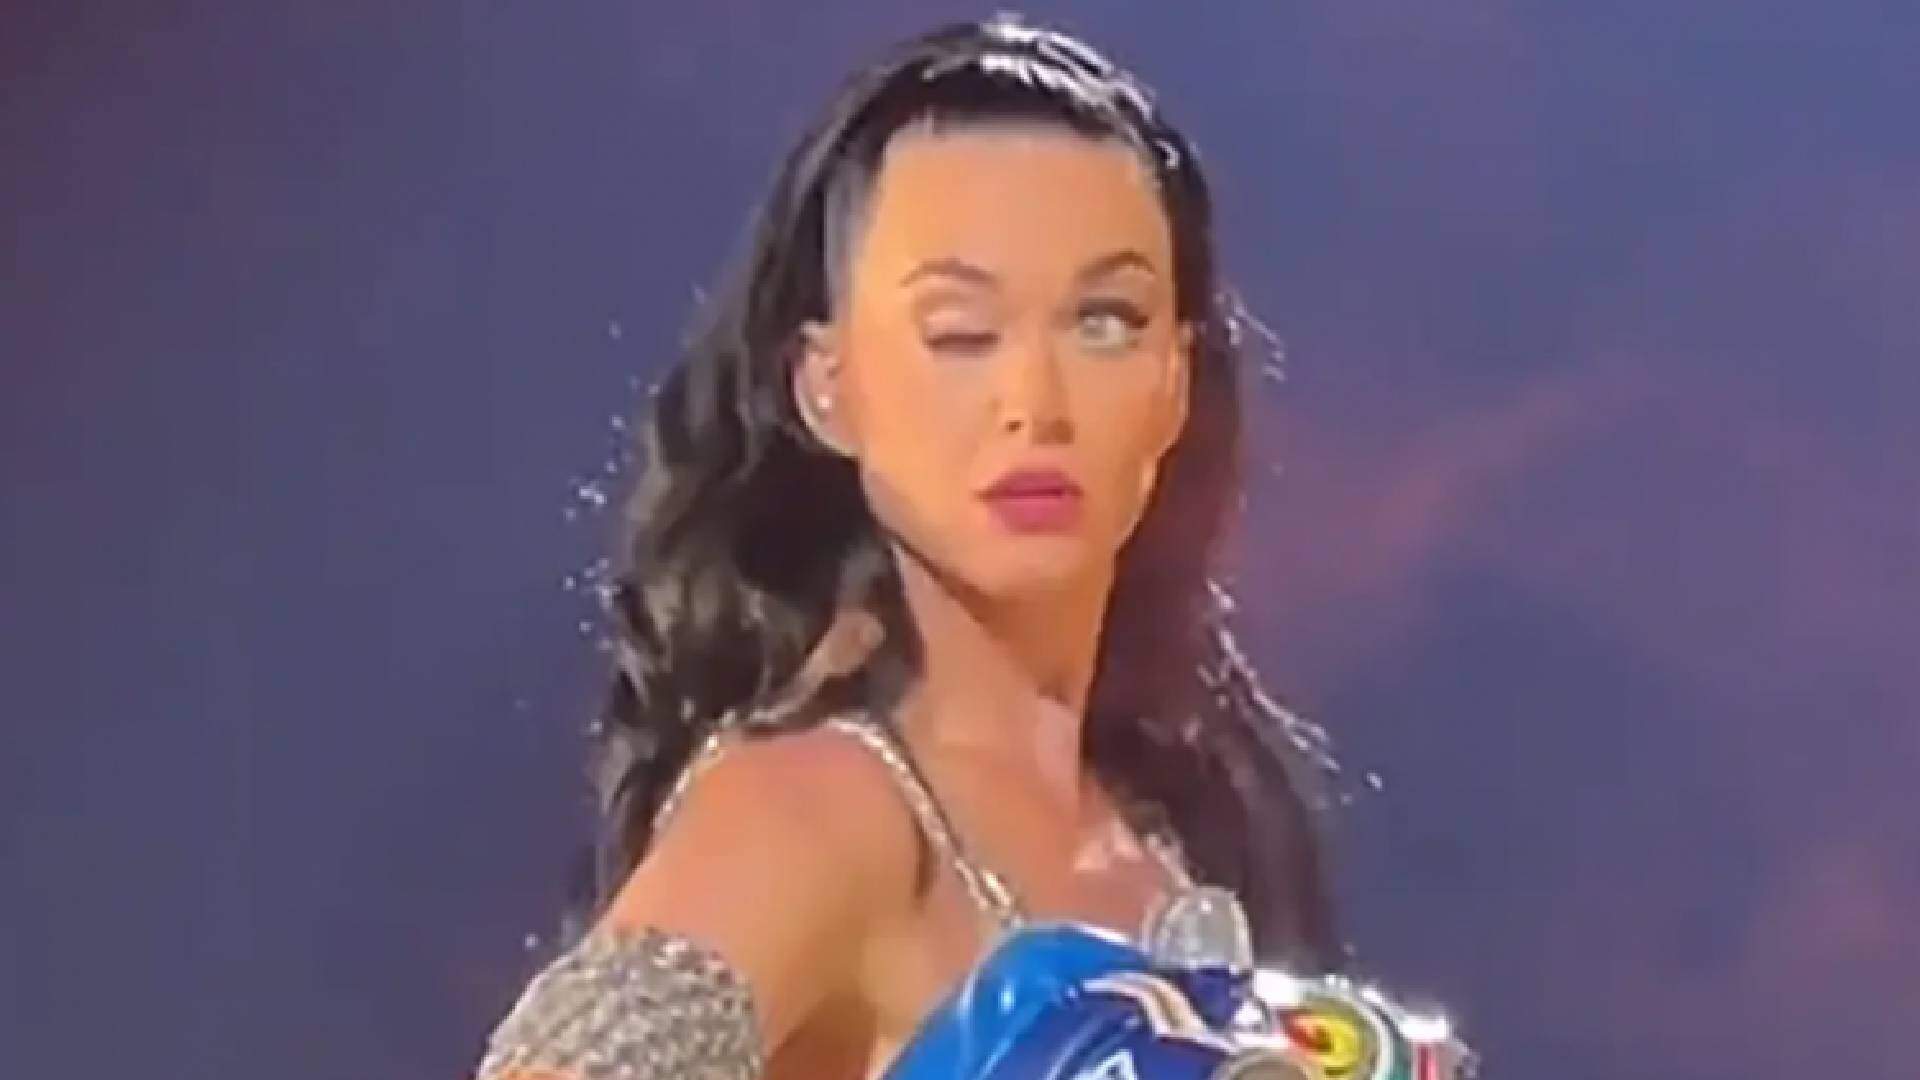 Katy Perry revela verdadeiro motivo por não conseguir abrir um dos olhos durante show - Metropolitana FM